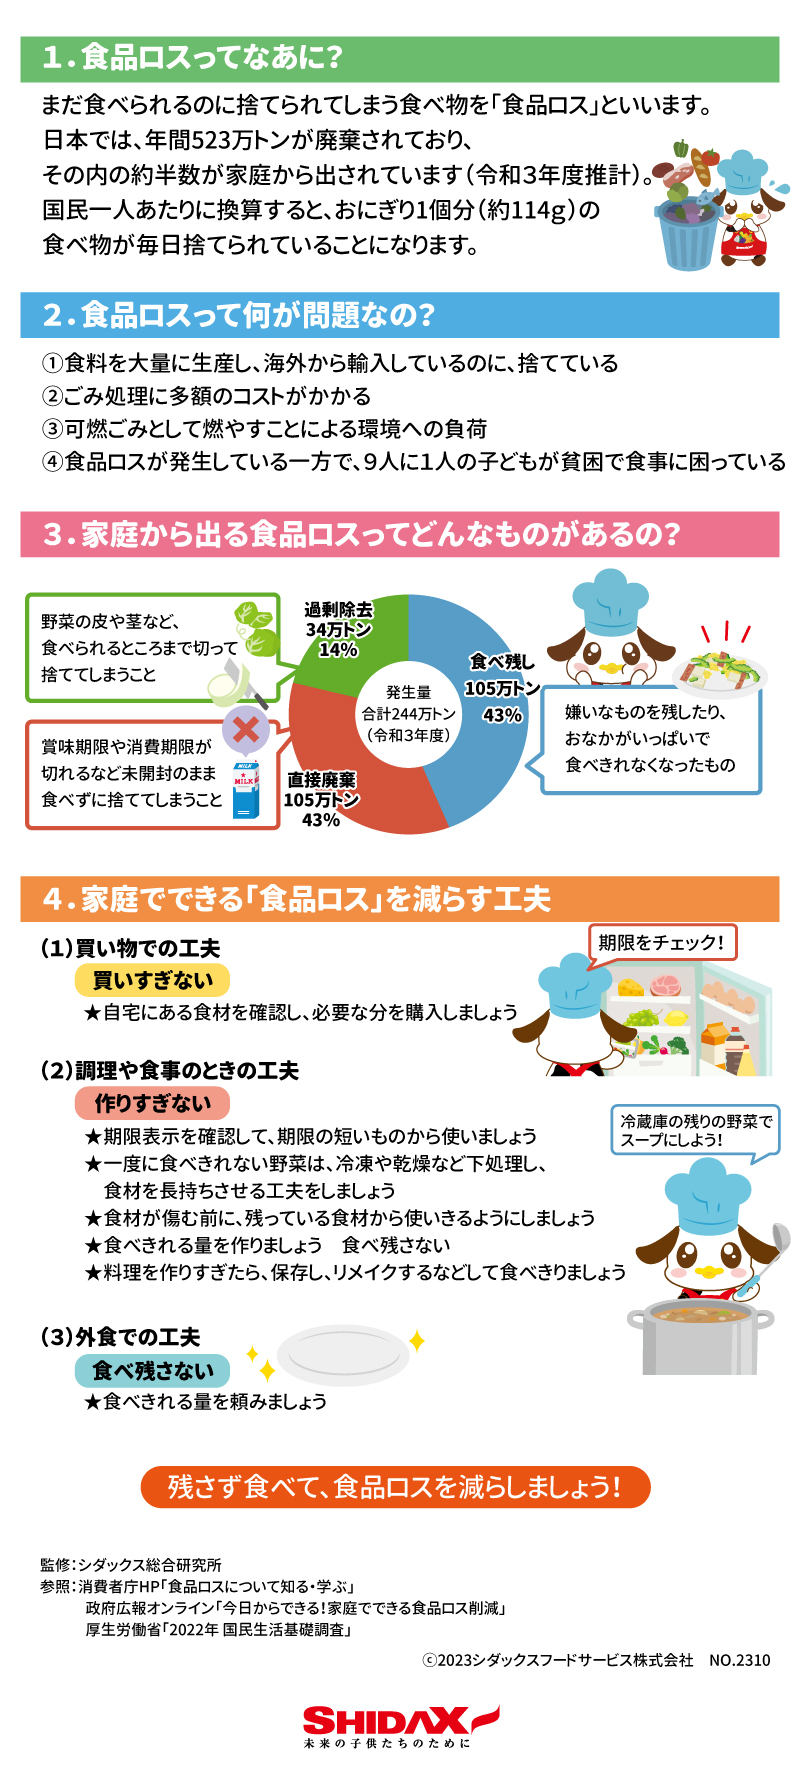 ＜10月は食品ロス削減月間／10月30日は食品ロス削減の日＞ 「食品ロス」を減らしましょう 1.食品ロスってなあに？ まだ食べられるのに捨てられてしまう食べ物を「食品ロス」といいます。日本では、年間523万トンが廃棄されており、そのうちの約半数が家庭から出されています。（令和3年度推計） 国民一人あたりに換算すると、おにぎり1個分（約114ｇ）の食べ物が毎日捨てられていることになります。 2.食品ロスって何が問題なの？ ①食料を大量に生産し、海外から輸入しているのに、捨てている ②ごみ処理に多額のコストがかかる ③可燃ごみとして燃やすことによる環境への負荷 ④食品ロスが発生している一方で、7人に1人の子どもが貧困で食事に困っている 3.家庭から出る食品ロスってどんなものがあるの？ 過剰除去　34万トン　14％ 野菜の皮や茎など、食べられるところまで切って捨ててしまうこと 食べ残し　105万トン　43％ 嫌いなものを残したり、おなかがいっぱいで食べきれなくなったもの 直接廃棄105万トン　43％ 賞味期限や消費期限が切れるなど未開封のまま食べずに捨ててしまうこと 4.家庭でできる「食品ロス」を減らす工夫 （1）買い物での工夫　買いすぎない ★自宅にある食材を確認し、必要な分を購入しましょう （2）調理や食事の時の工夫　作りすぎない ★期限表示を確認して、期限の短いものから使いましょう ★一度に食べきれない野菜は、冷凍や乾燥など下処理し、食材を長持ちさせる工夫をしましょう ★食材が傷む前に、残っている食材から使いきるようにしましょう ★食べきれる量を作りましょう　食べ残さない ★料理を作りすぎたら、保存し、リメイクするなどして食べきりましょう （3）外食での工夫　食べ残さない ★食べきれる量を頼みましょう 残さず食べて、食品ロスを減らしましょう！